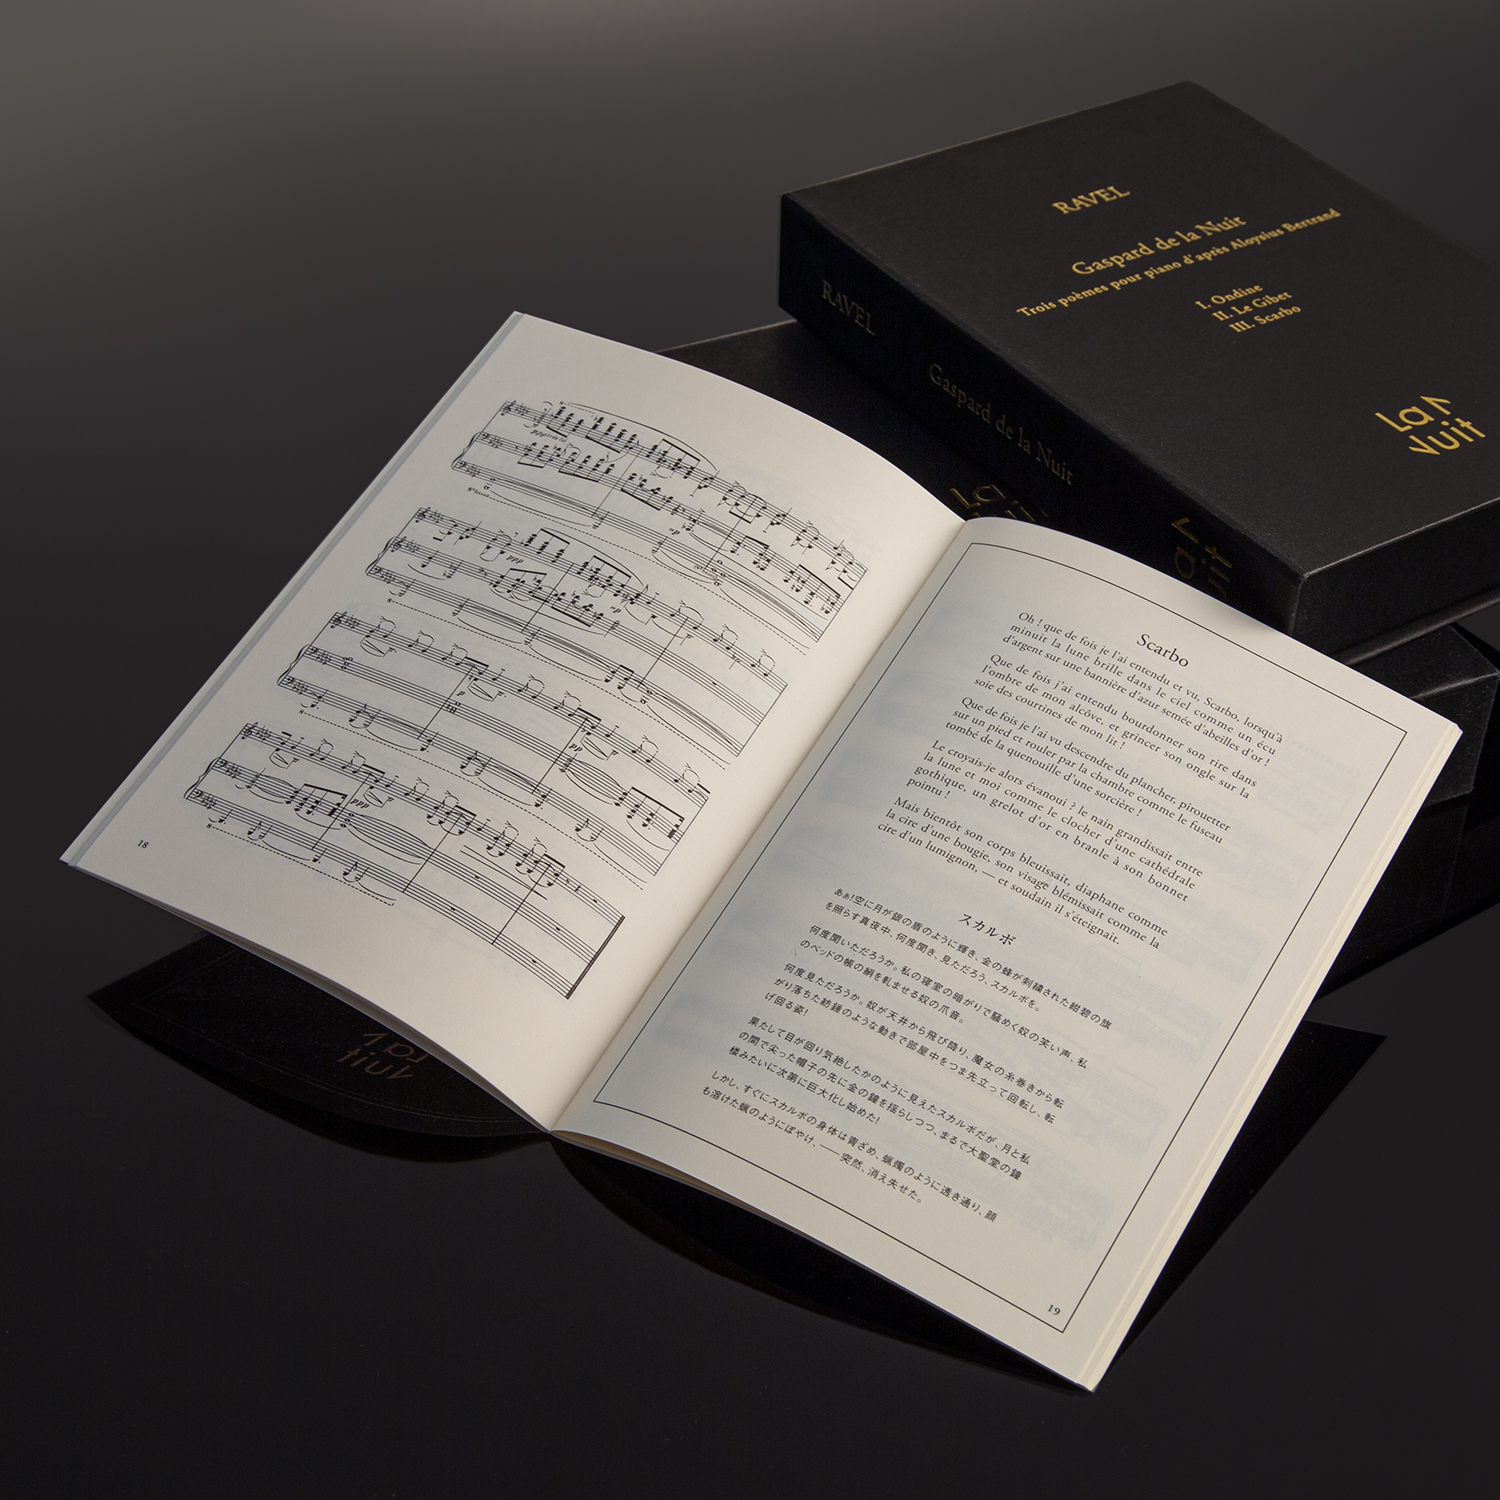 モーリス・ラヴェル作曲のピアノ曲の傑作『夜のガスパール』をイメージした香水セットが 本日 9月21日 発売！ クラシック音楽の香り化する